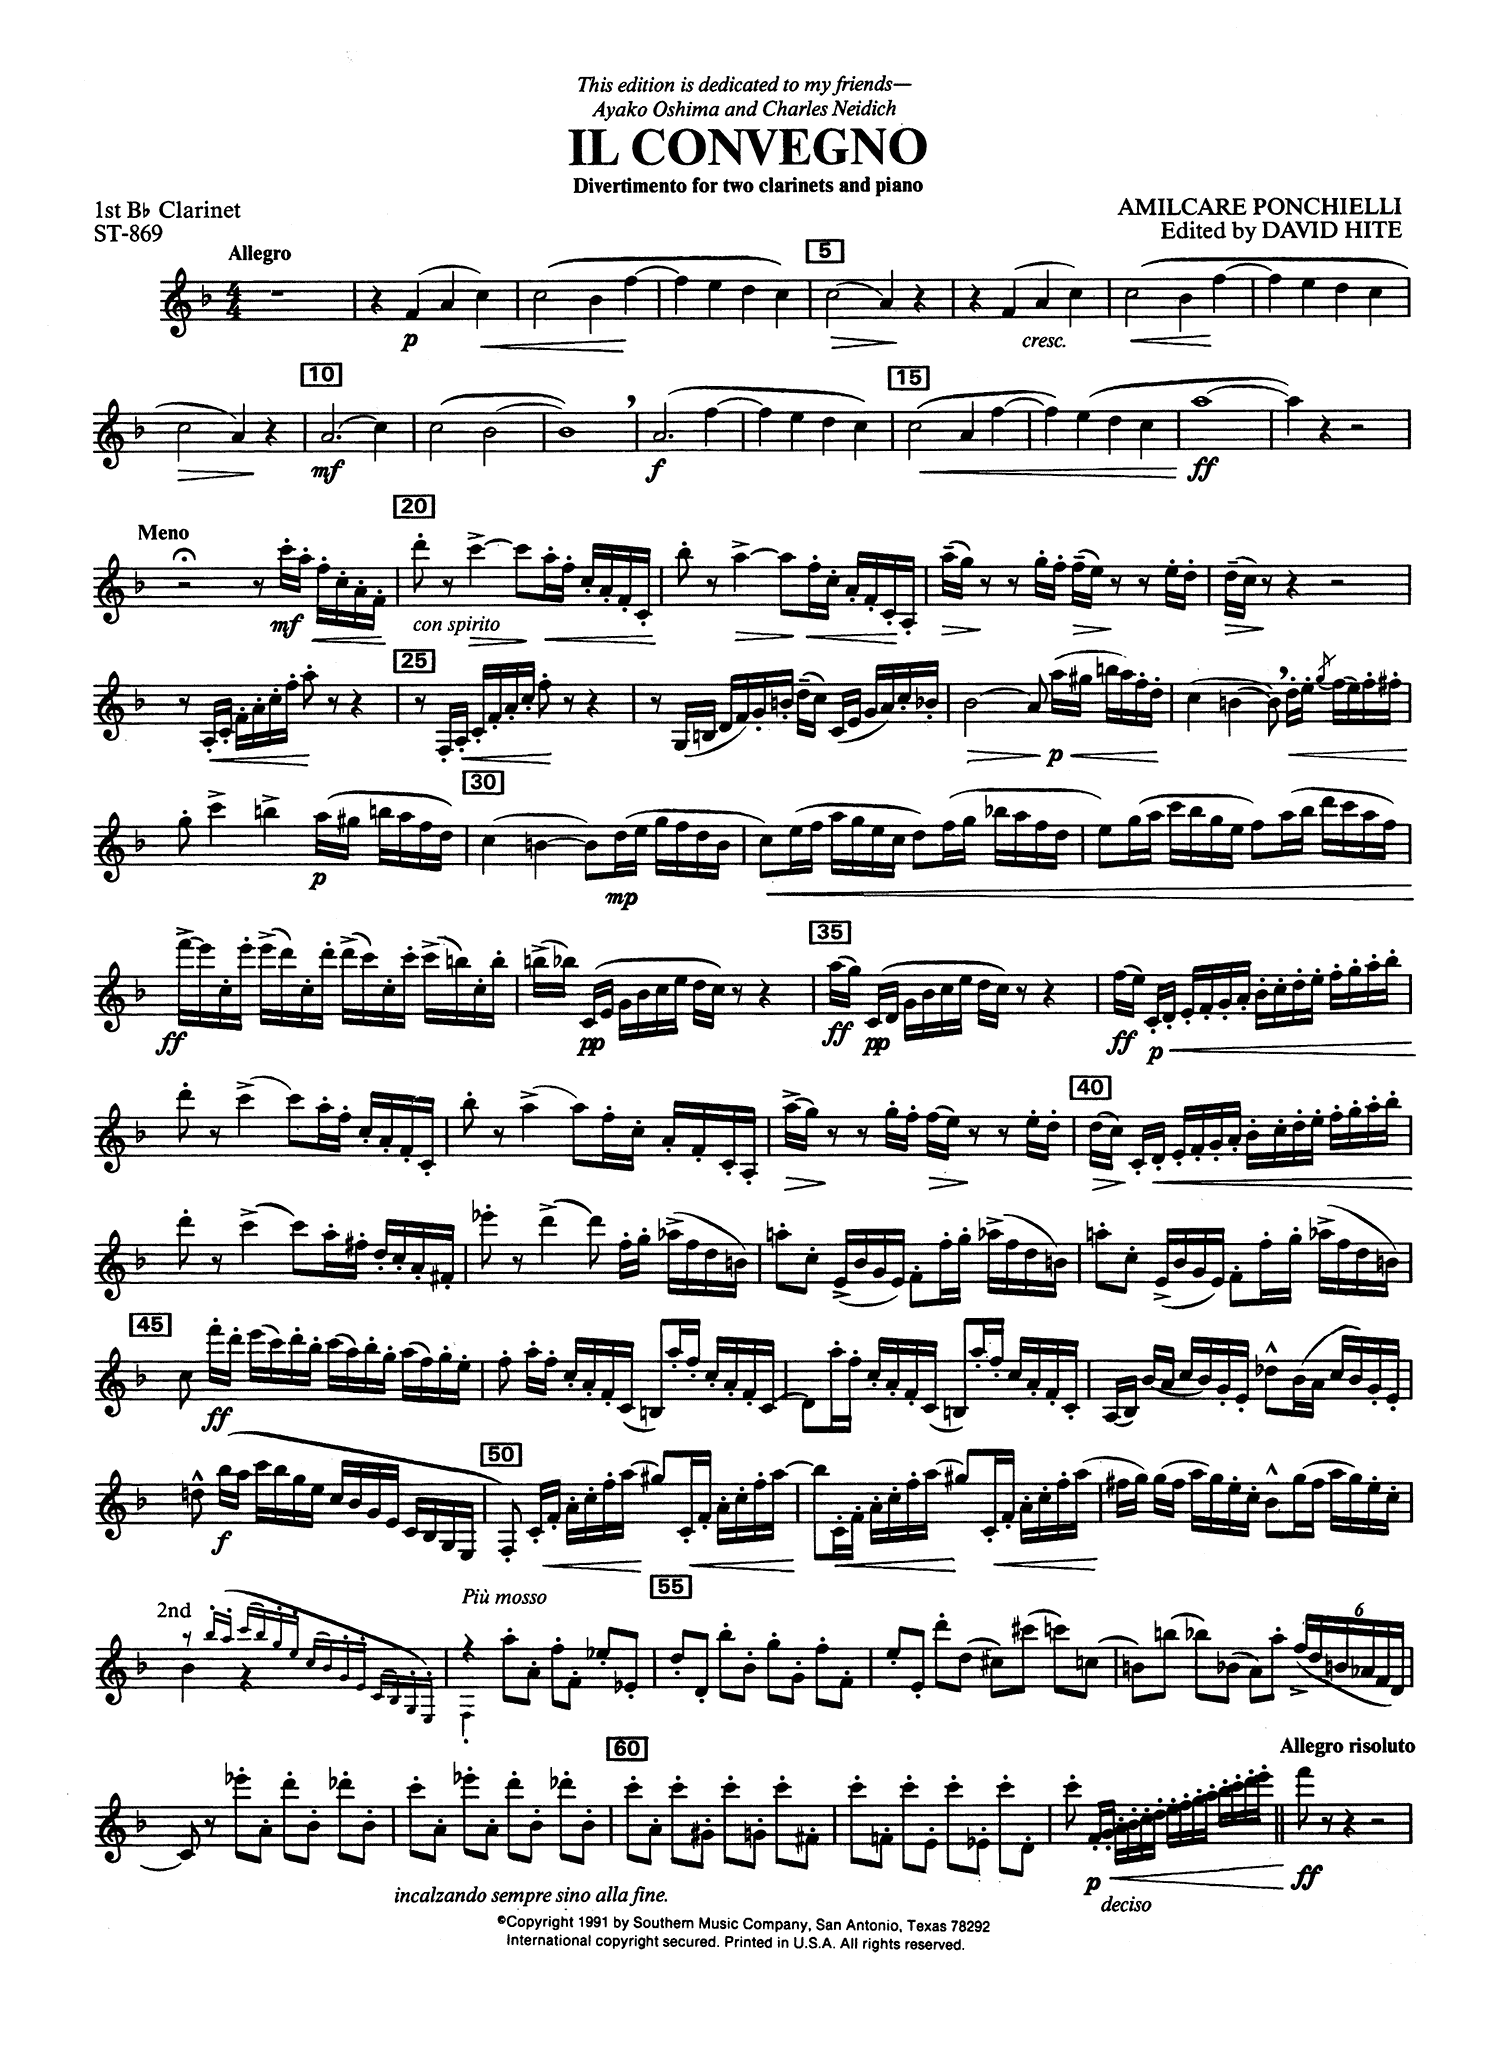 Ponchielli Il Convegno for 2 clarinets and piano ed. Hite first solo part